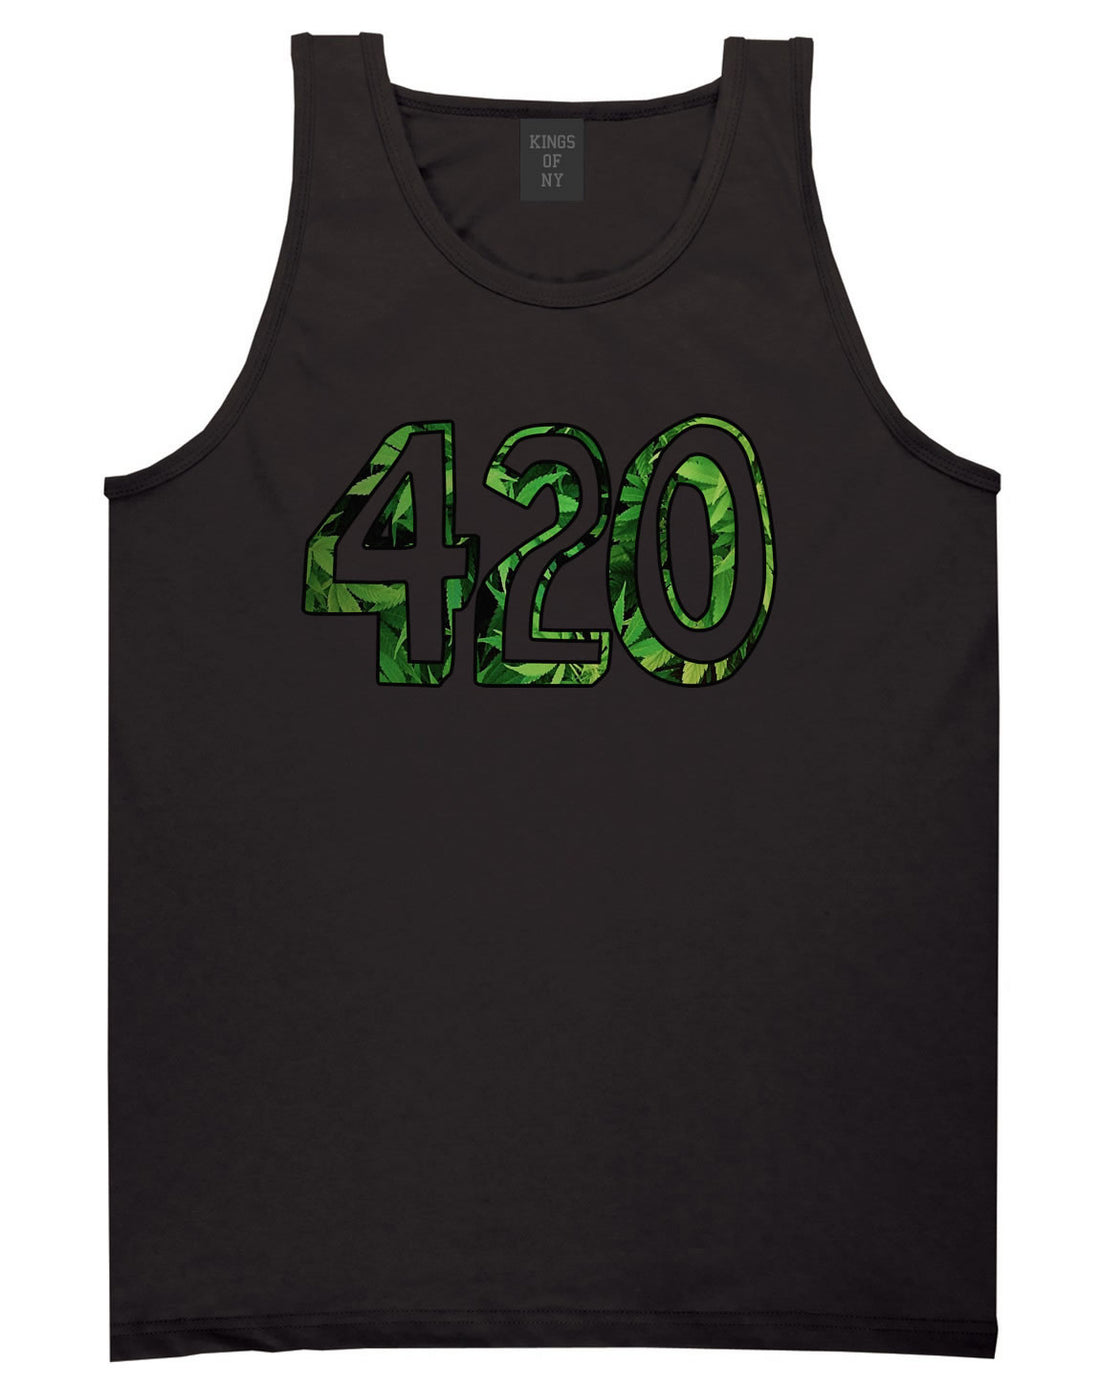  420 Weed Marijuana Print Tank Top in Black by Kings Of NY